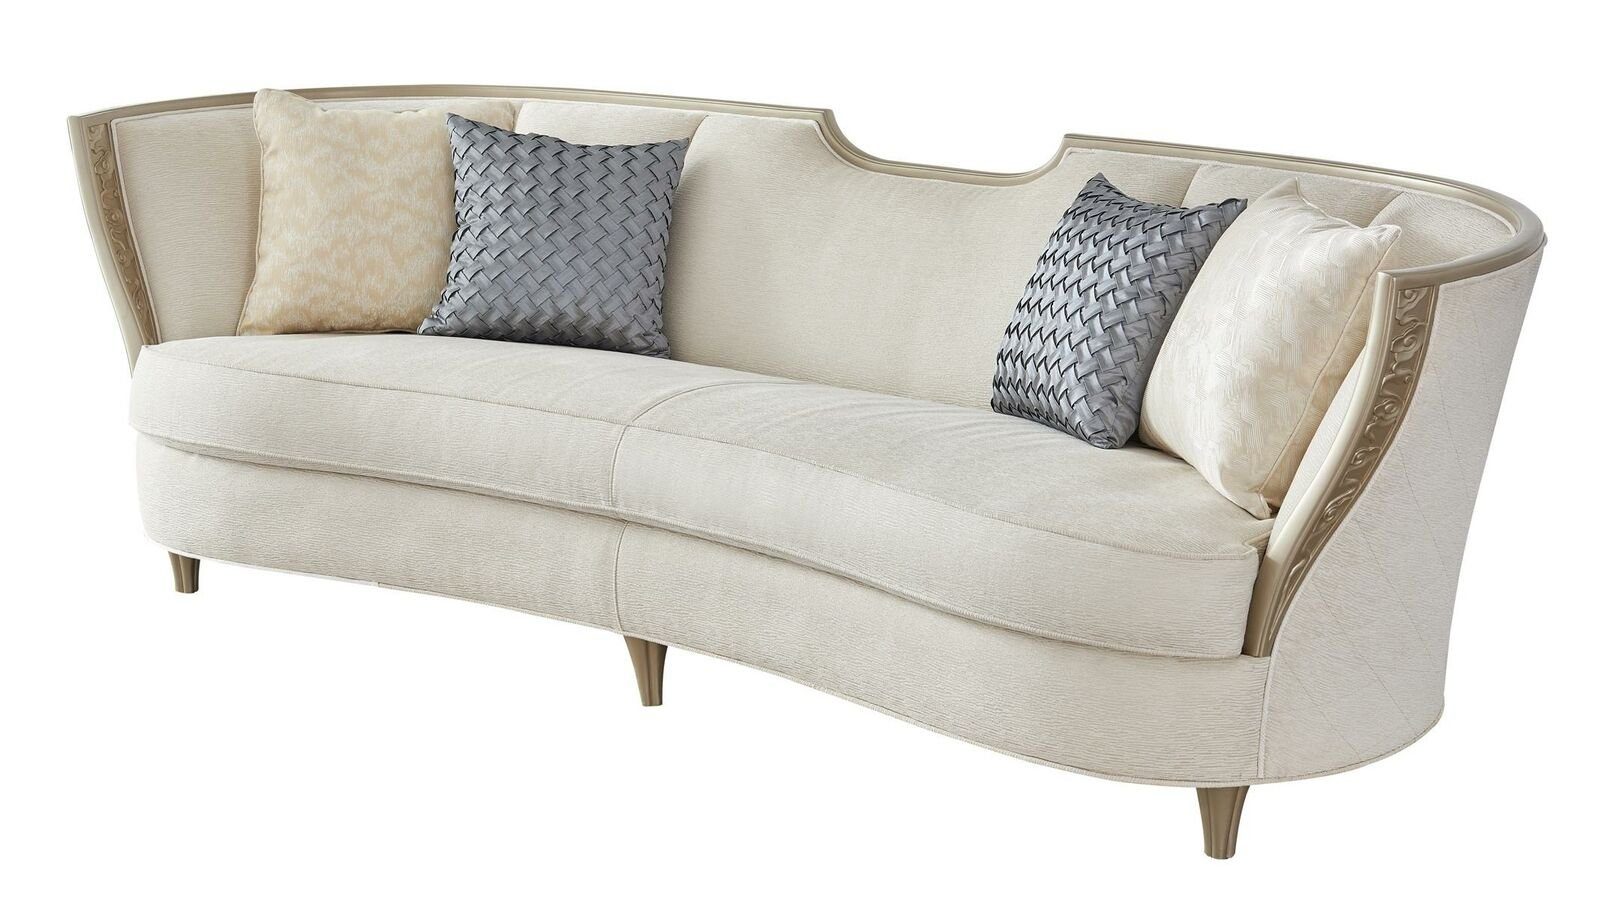 JVmoebel Sofa Stilvolle Beige Sofagarnitur 3+1 Sitzer Couch, Polstermöbel in Moderne Made Europe